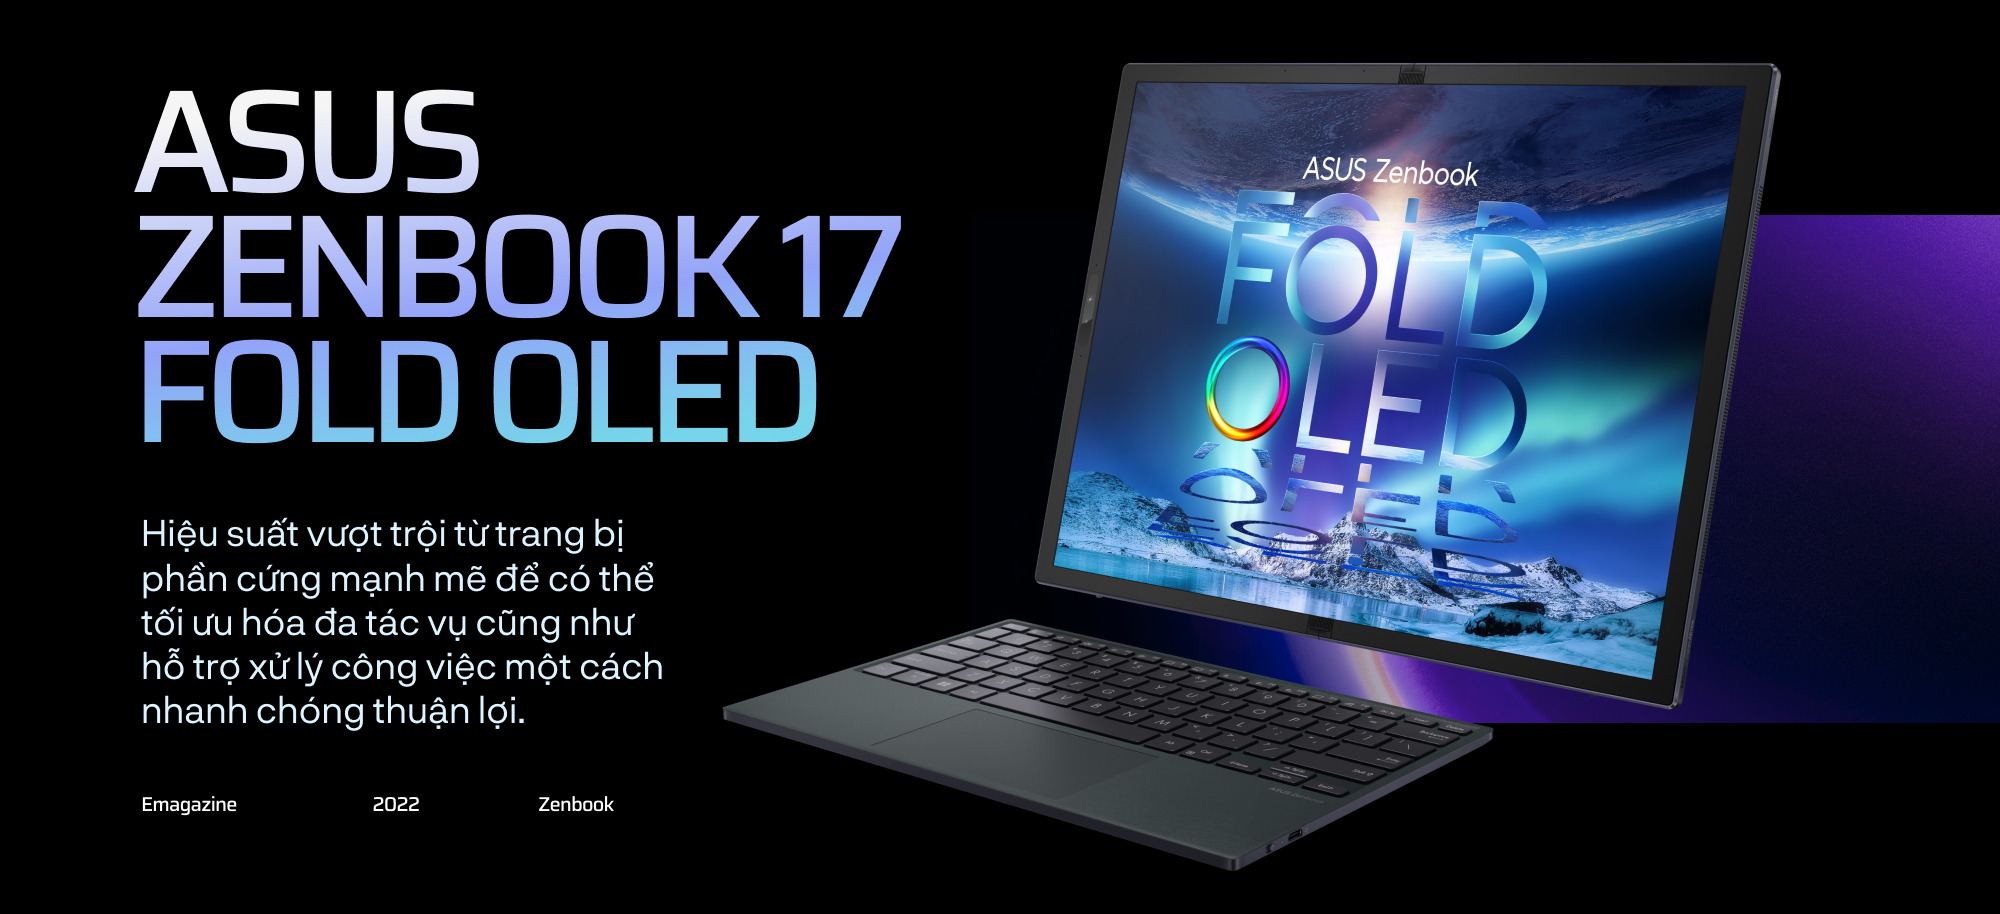 Gập ngàn giới hạn, mở vạn tương lai cùng máy tính xách tay màn hình gập ASUS Zenbook 17 Fold OLED - Ảnh 13.